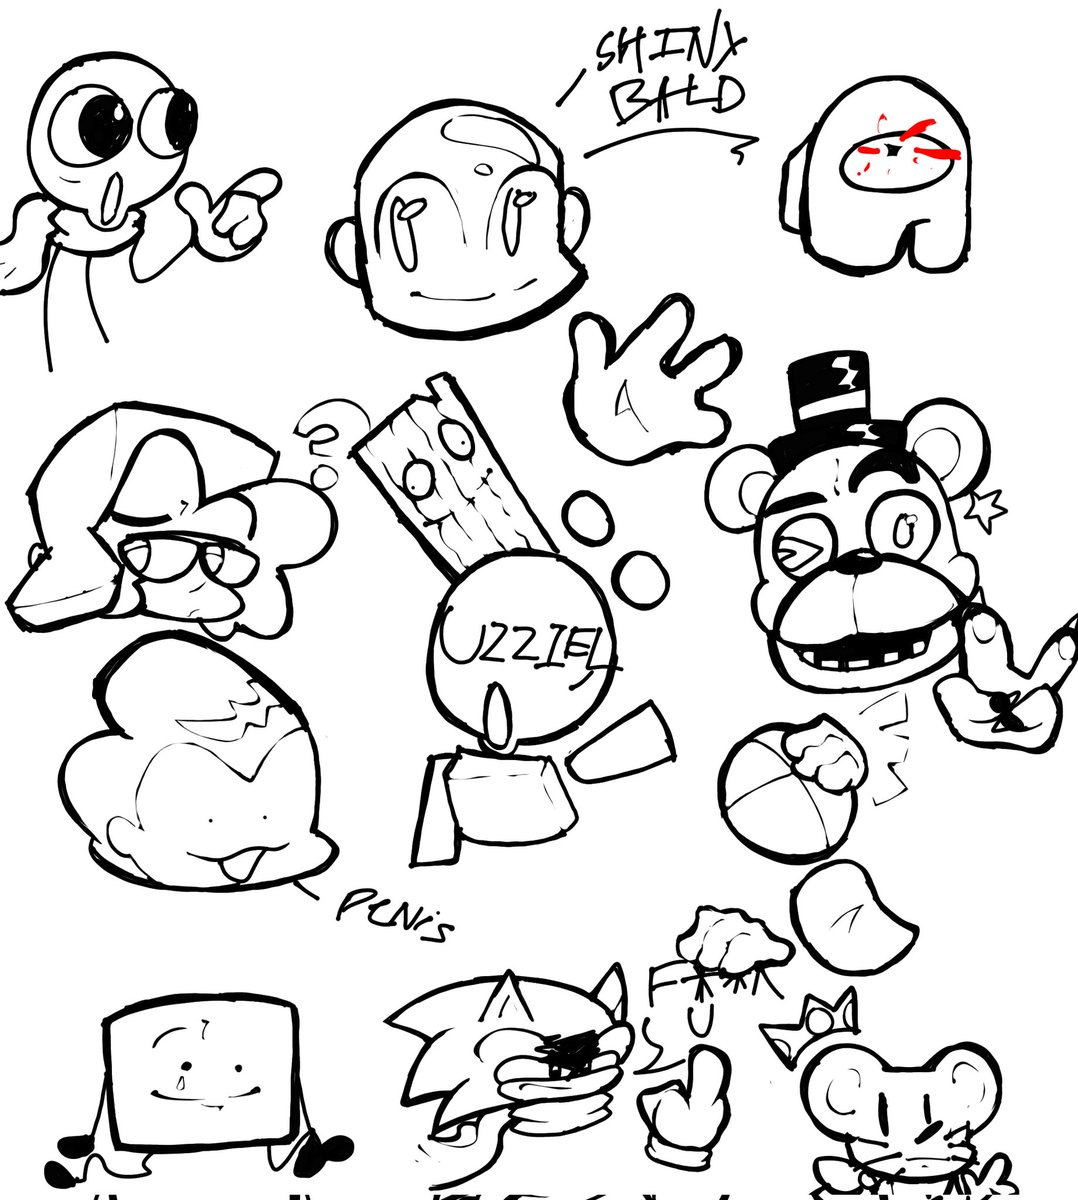 Random ass doodles